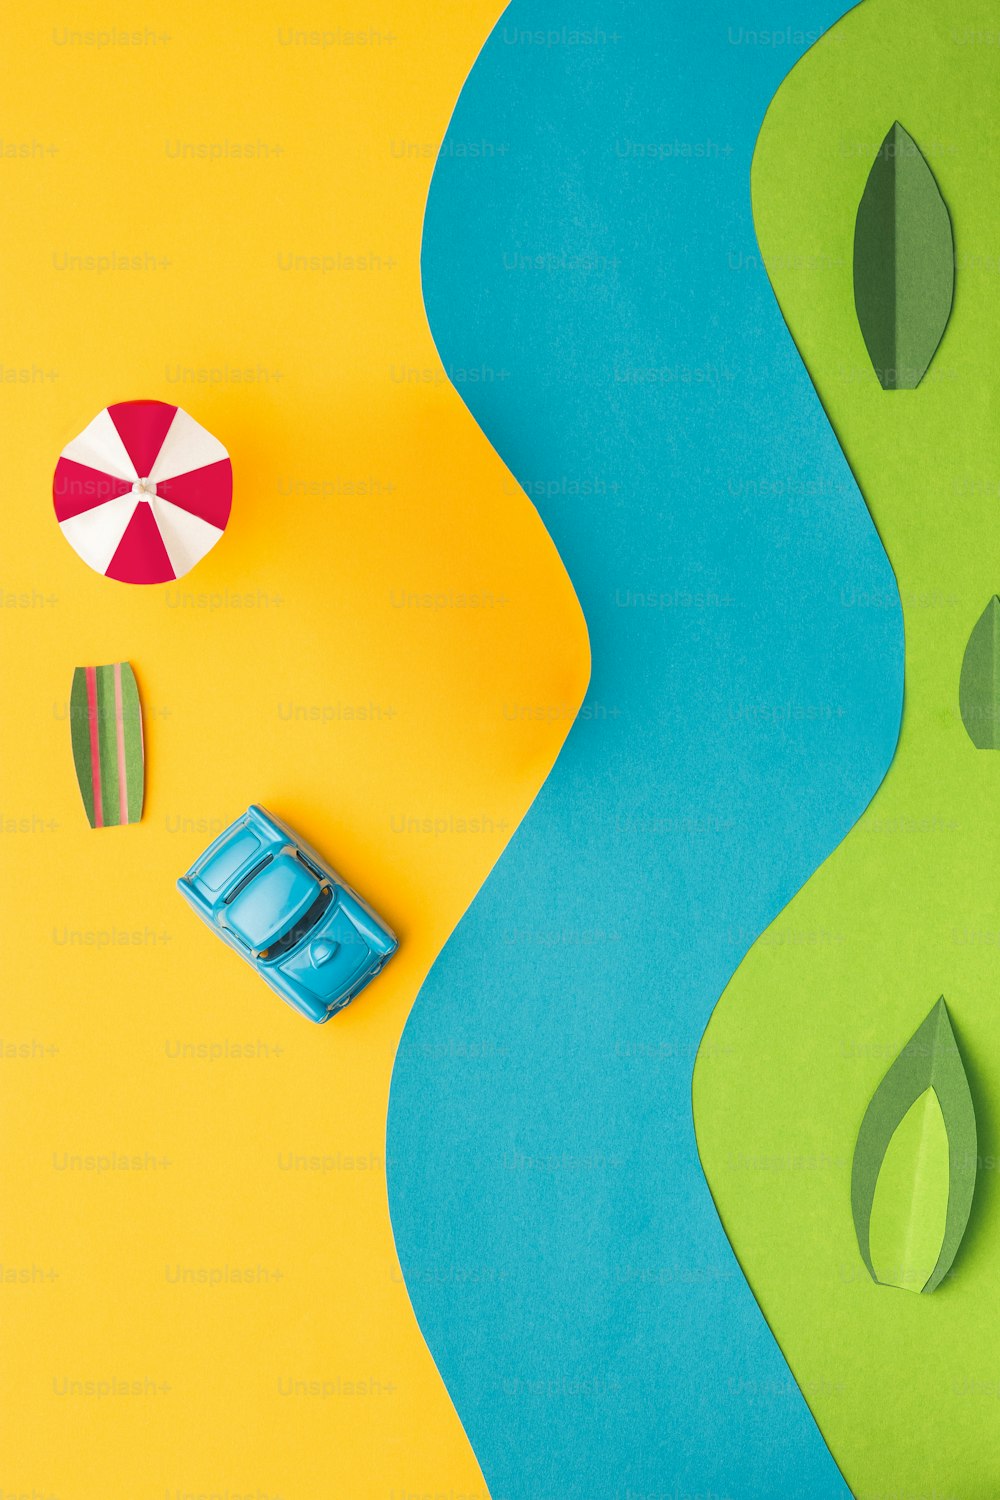 Die Spielzeuge - Oldtimer-Miniaturauto und Bus auf trendigem farbigem Papier. Das Pop-Art- und Kreativitätskonzept. Das Urlaubs-, Reise-, Reise-, Wochenend-, Urlaubskonzept